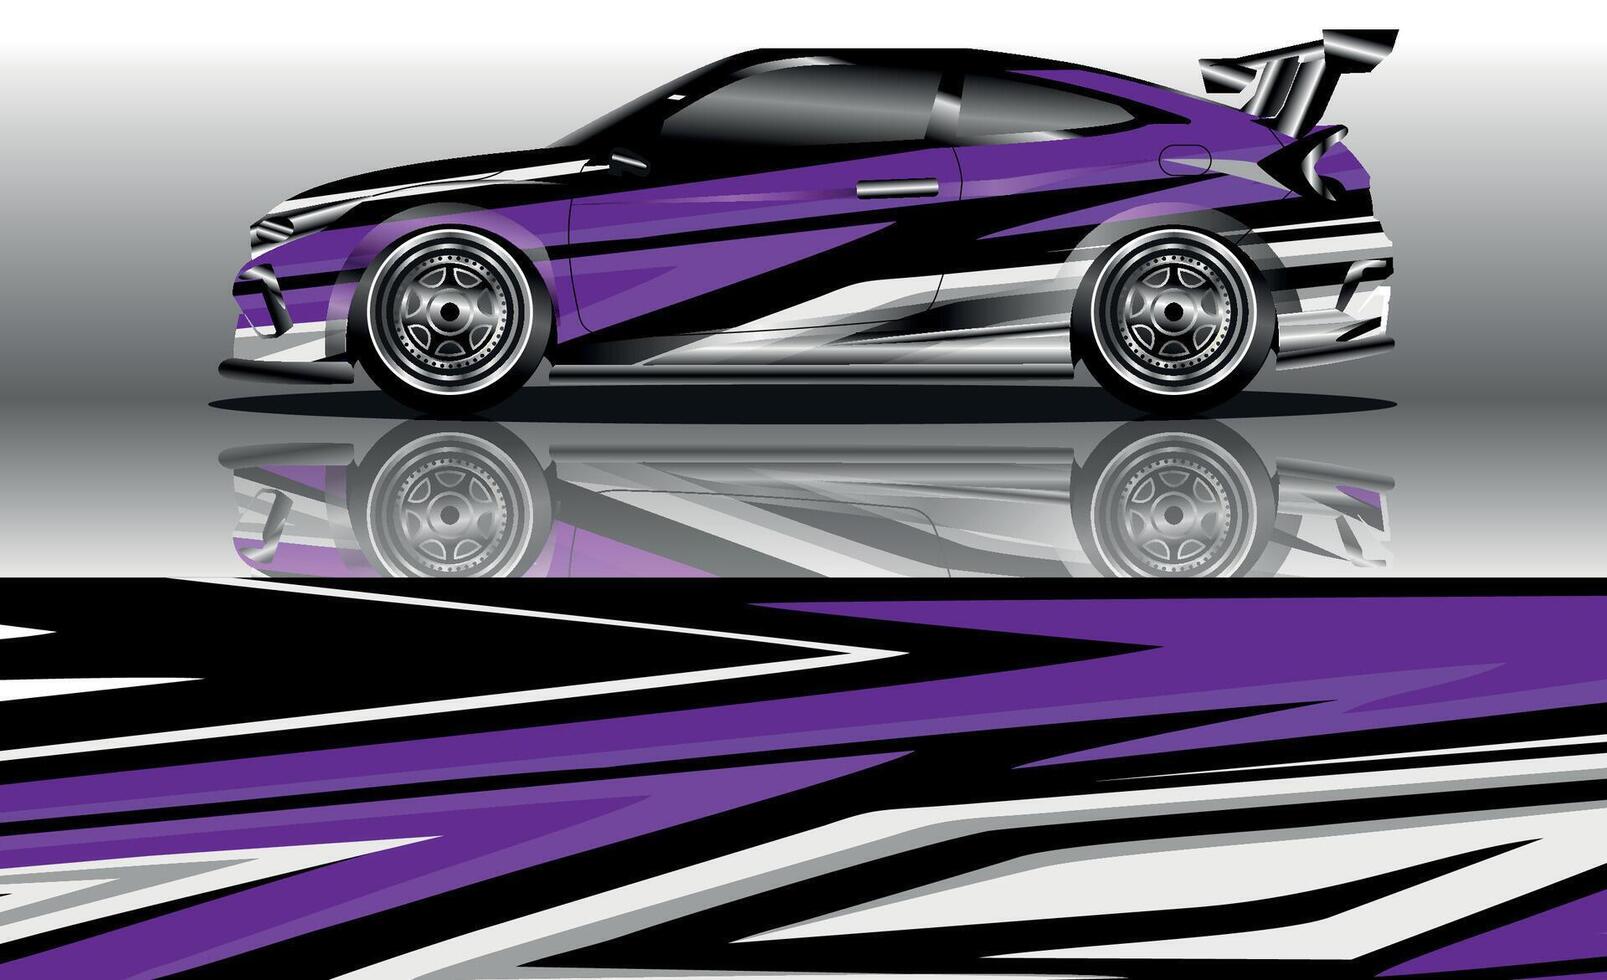 vektor grafis librea móvil desain latar belakang grunge abstracción untuk bungkus vinil kendaraan dan marca mobil vector